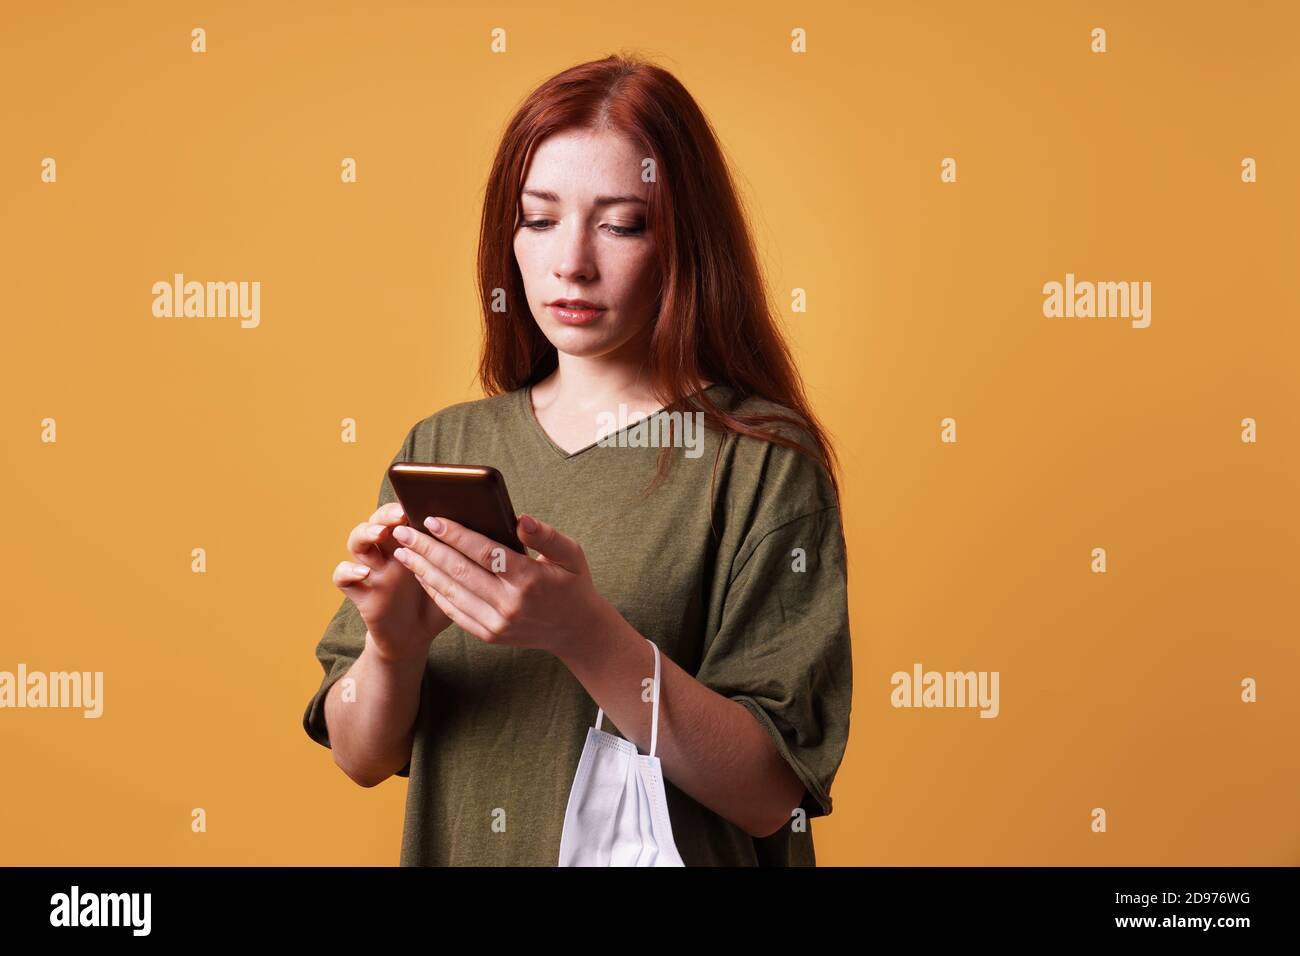 Junge Frau mit ihrem Smartphone oder Handy im Gesicht Maske hängt um ihr Handgelenk Stockfoto